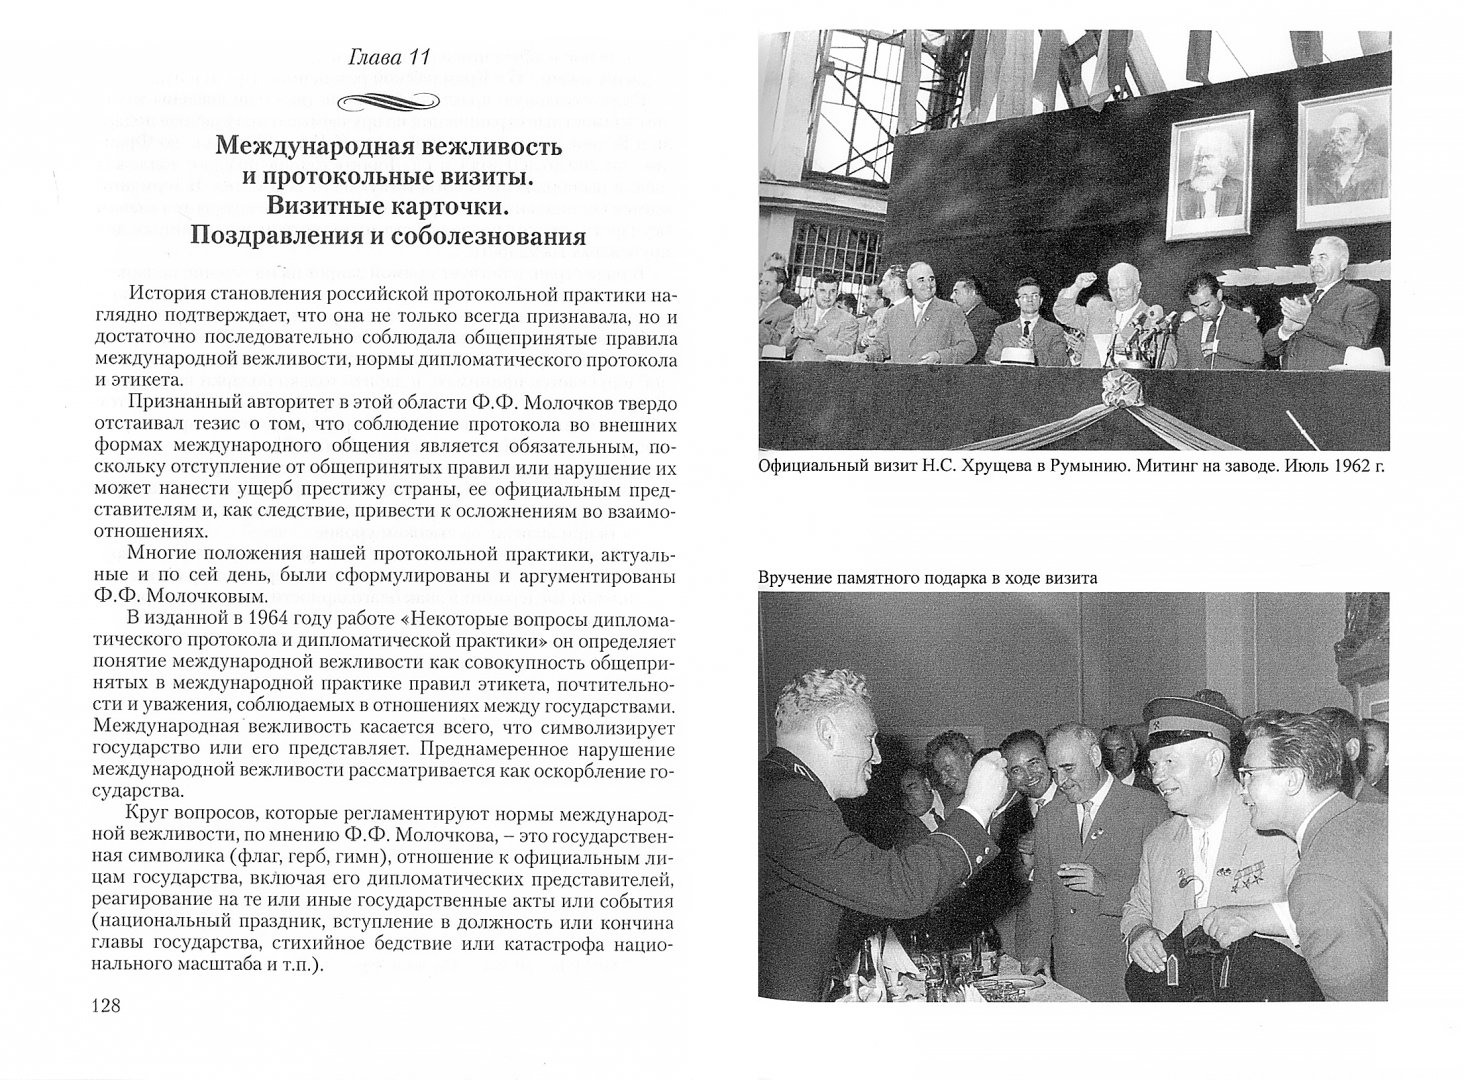 Иллюстрация 1 из 2 для История российского протокола - Павел Лядов | Лабиринт - книги. Источник: Лабиринт